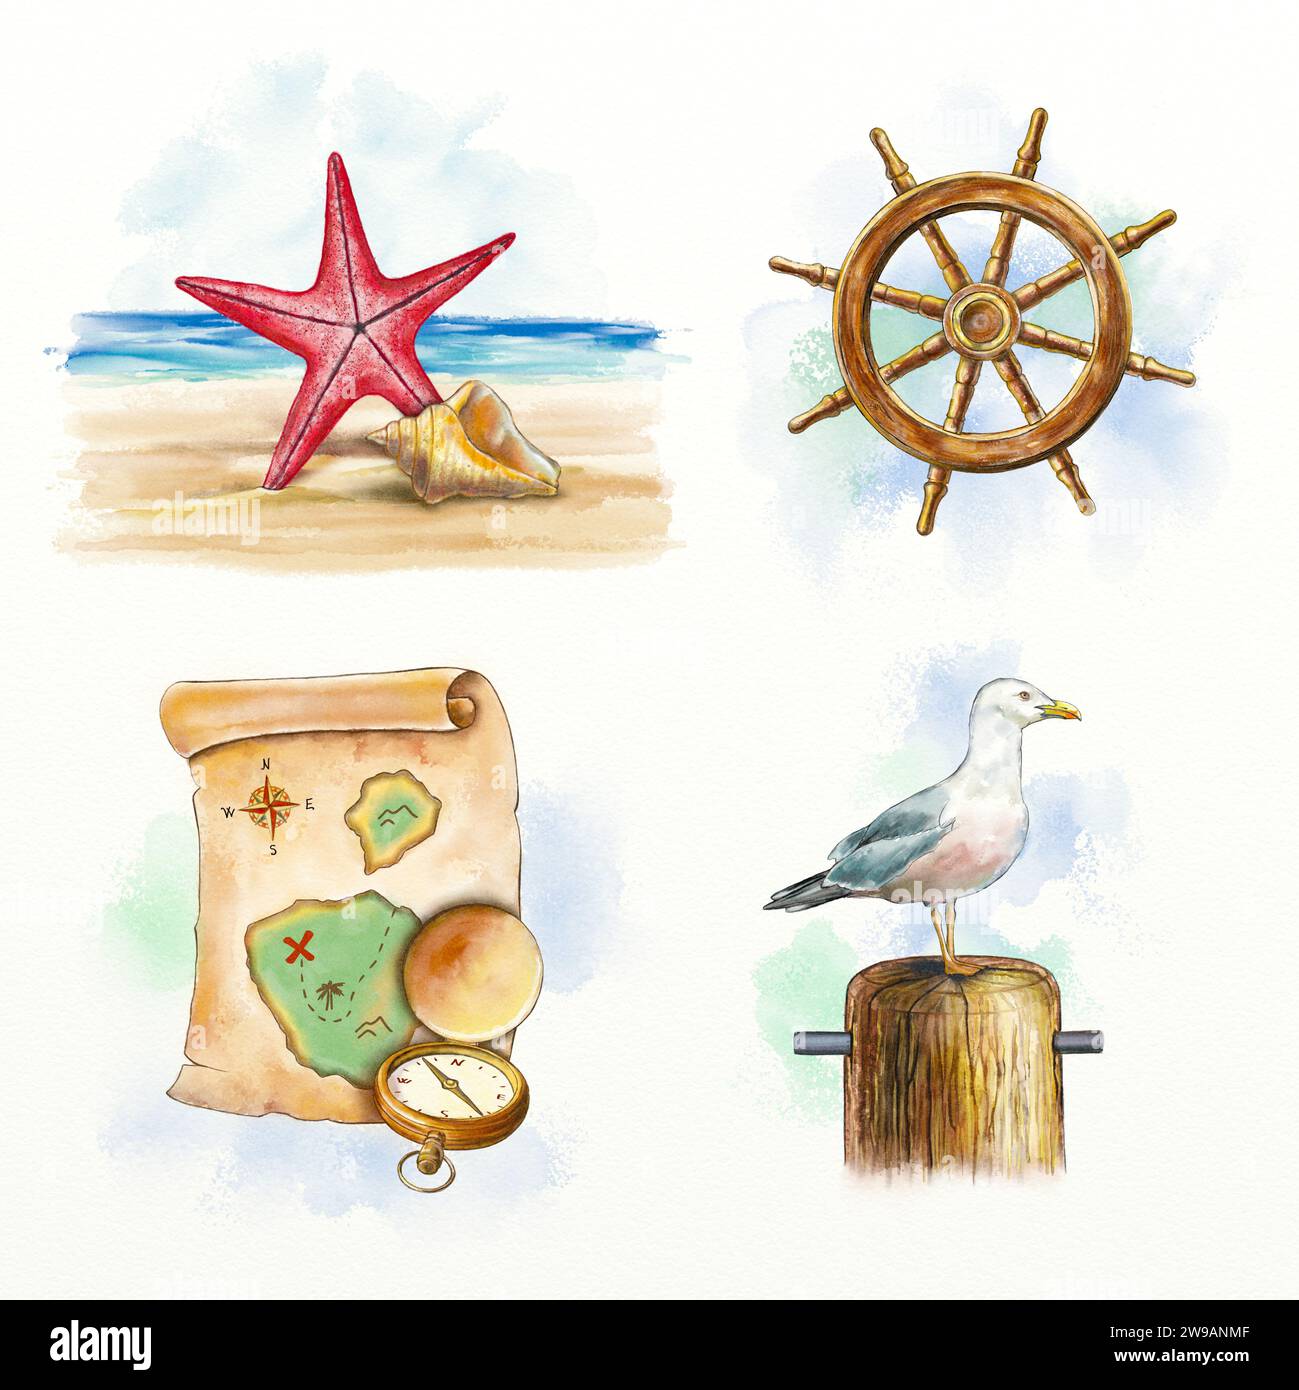 Compositions sur le thème nautique comprenant étoile de mer, coquillage, roue de bateau, carte ancienne, boussole et mouette. Aquarelle numérique. Banque D'Images